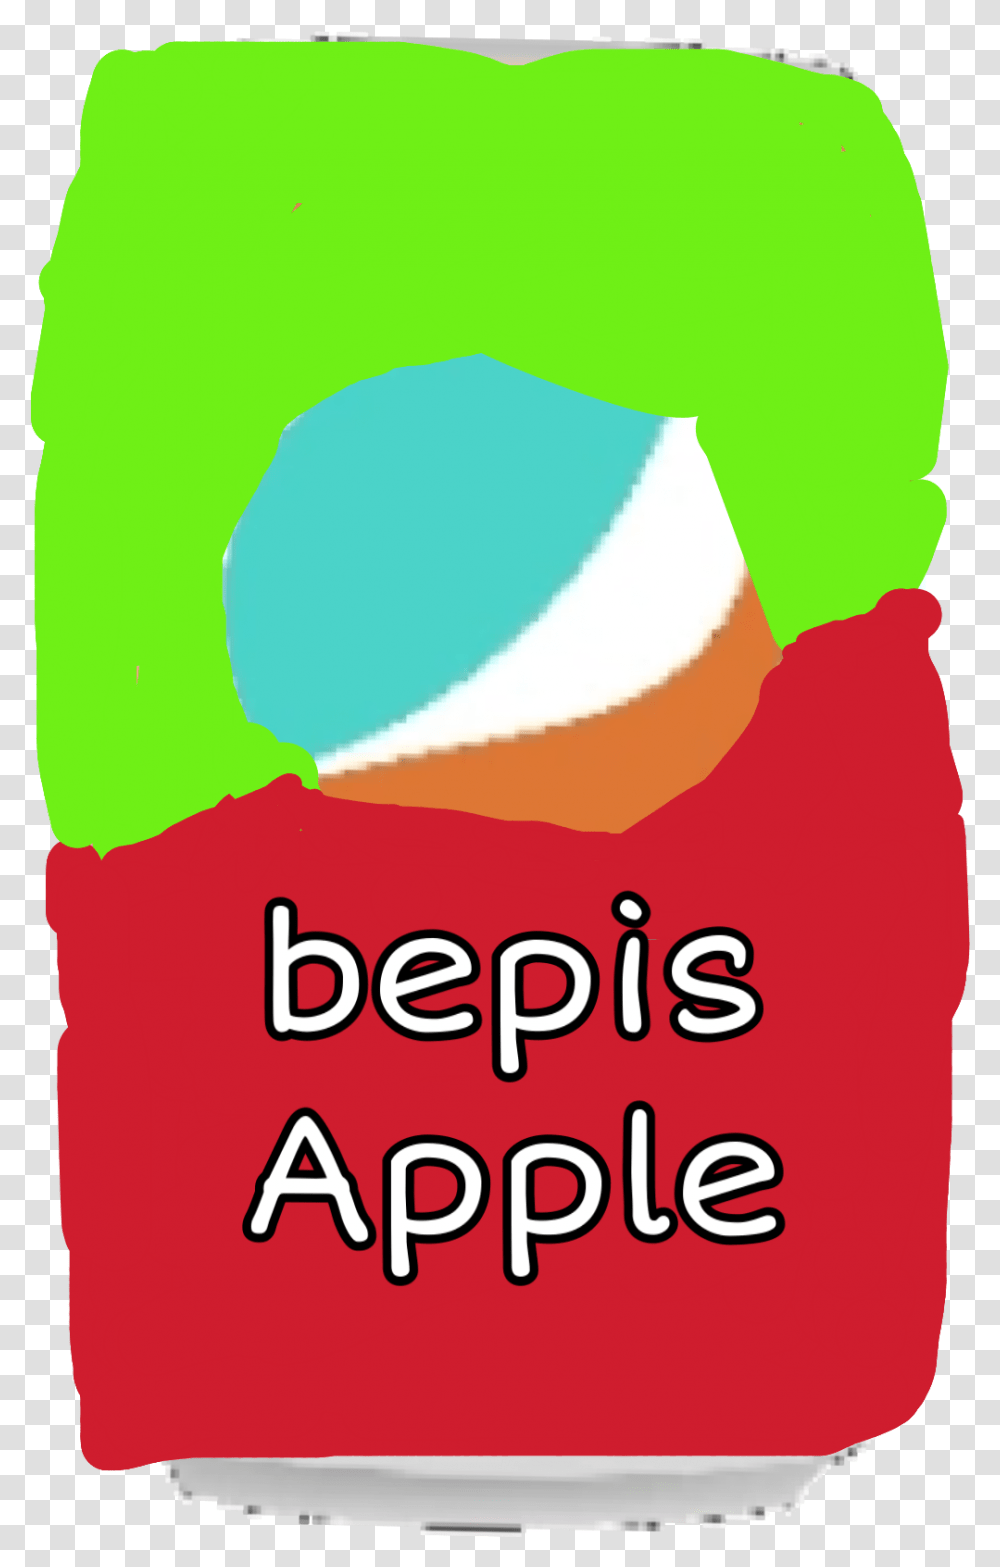 Wanna Bepis Apple Illustration, Logo Transparent Png